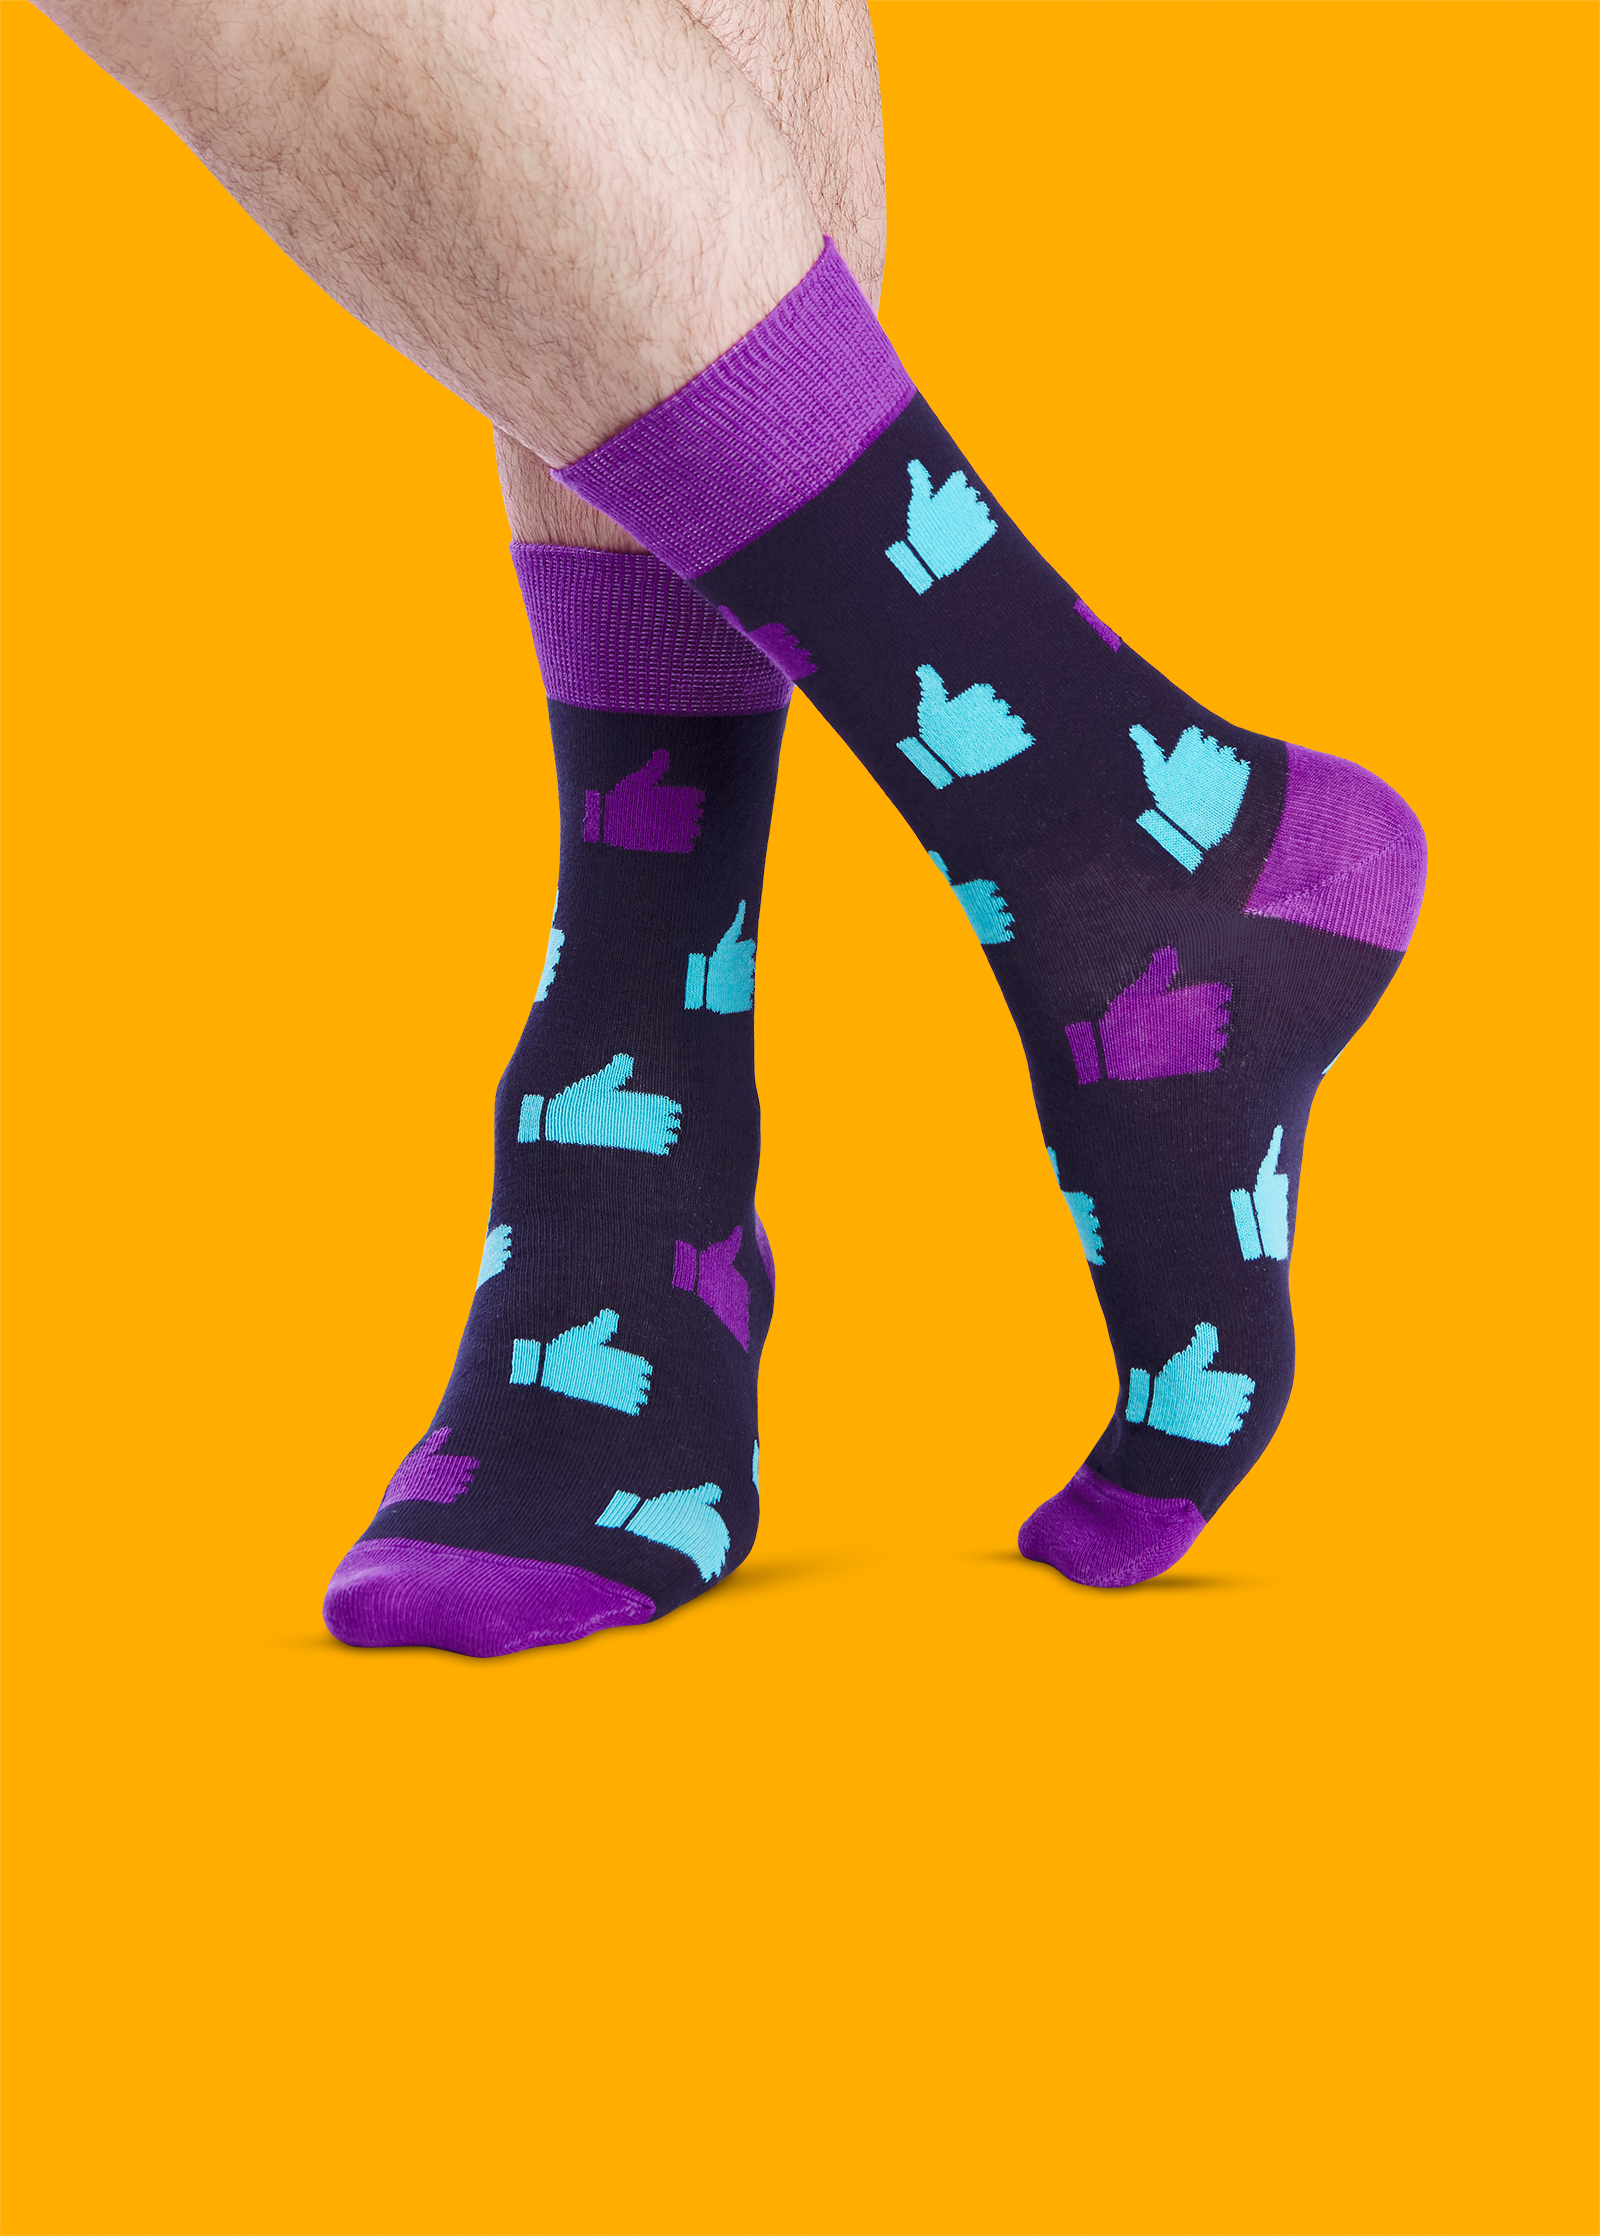 Купить носки socks. Носки INWIN men. Носки Фанни Сокс. Разноцветные носки. Необычные носки женские.